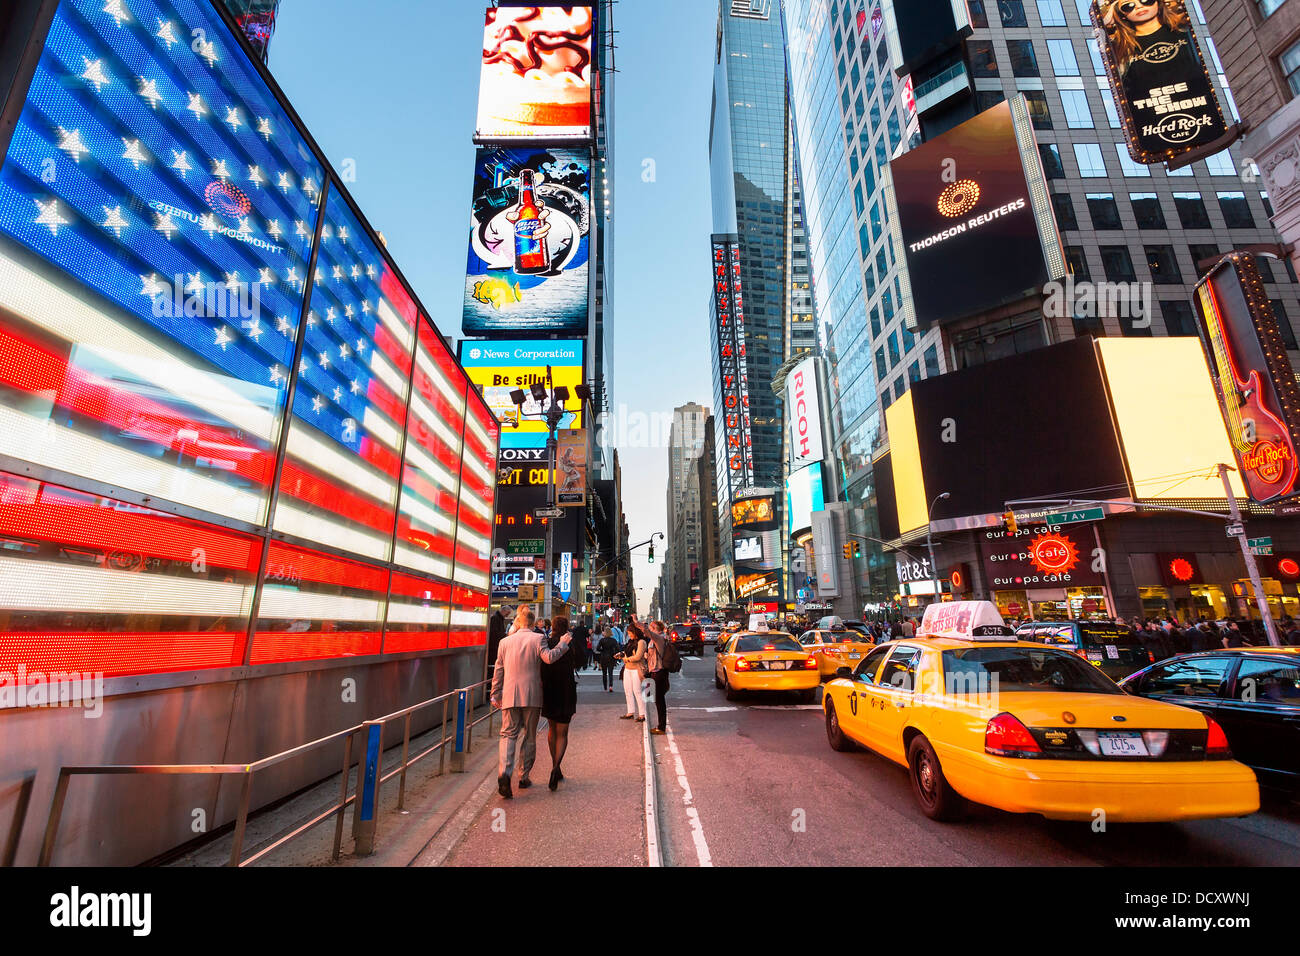 La ville de New York, Times Square au crépuscule Banque D'Images